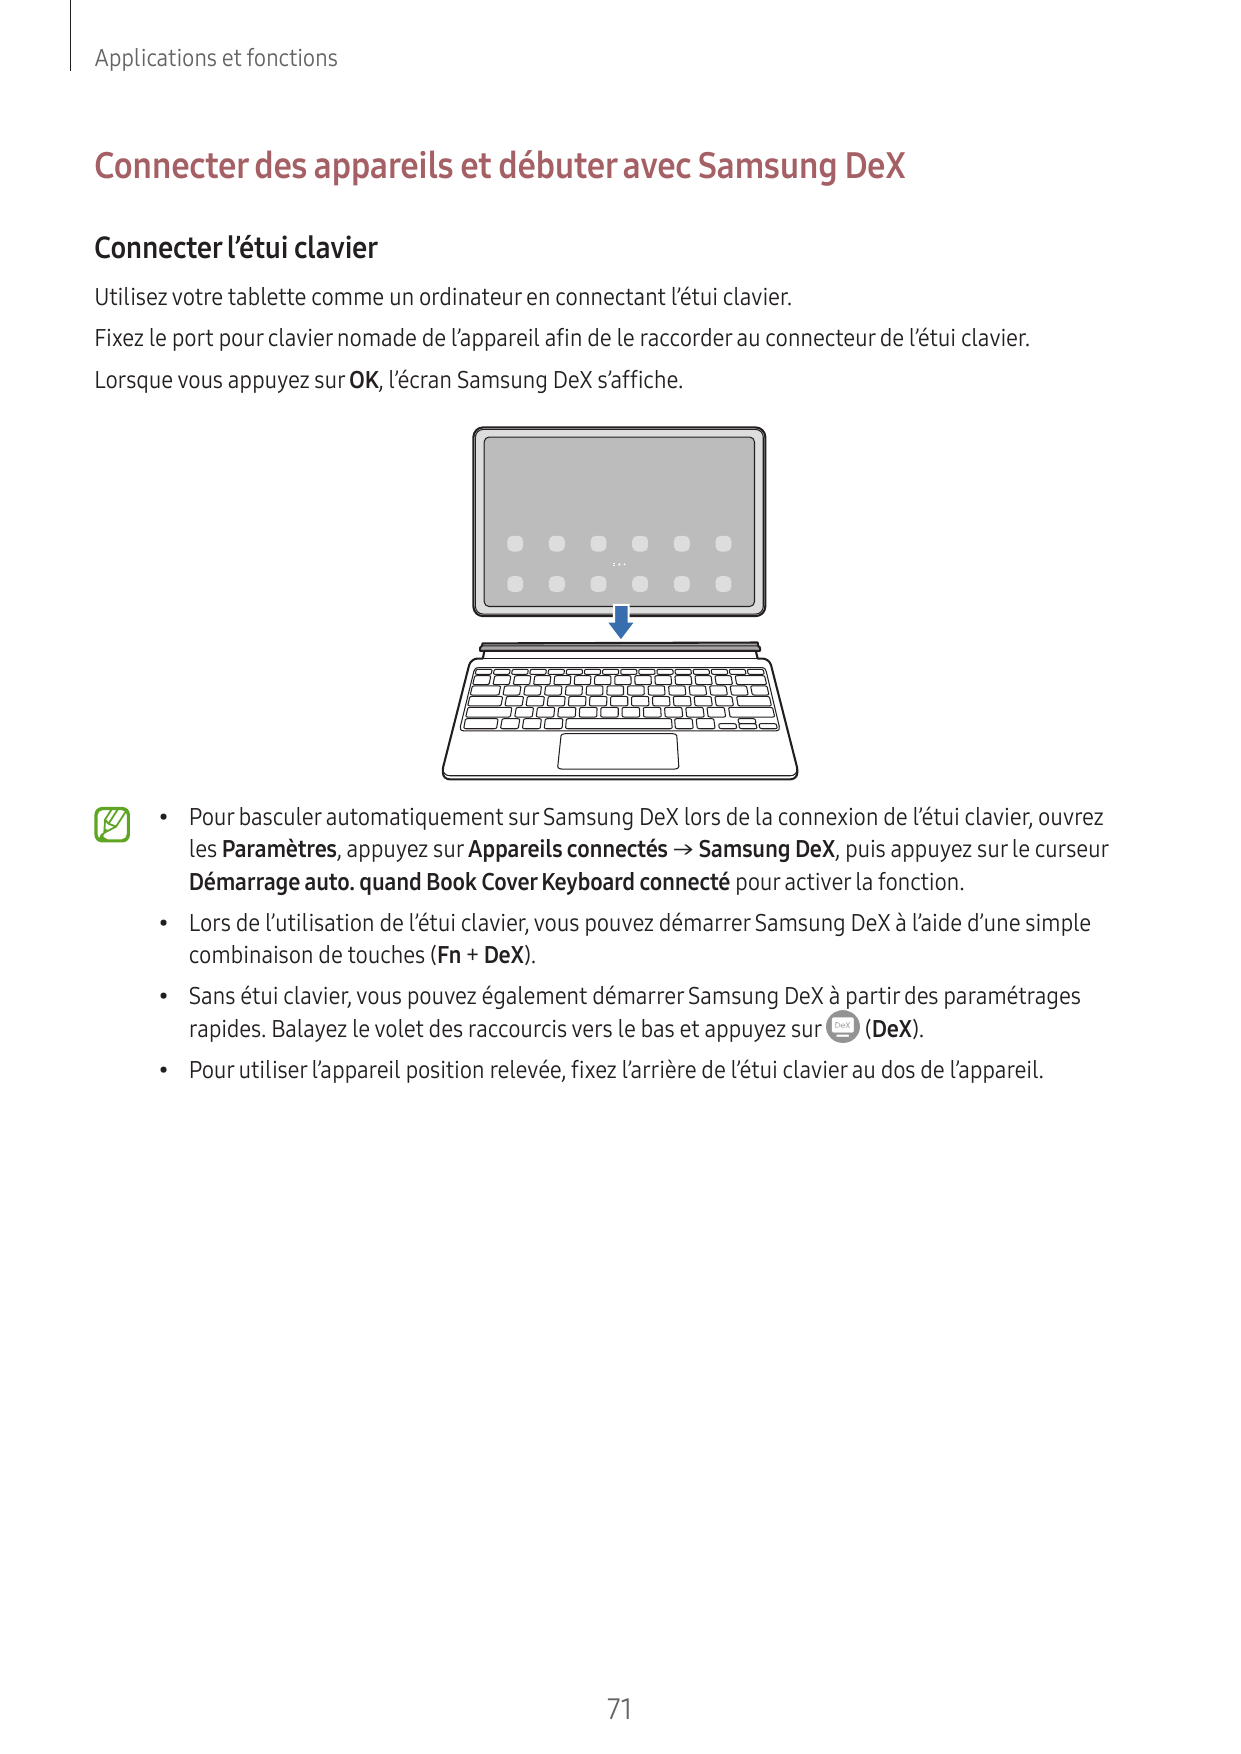 Applications et fonctionsConnecter des appareils et débuter avec Samsung DeXConnecter l’étui clavierUtilisez votre tablette comm